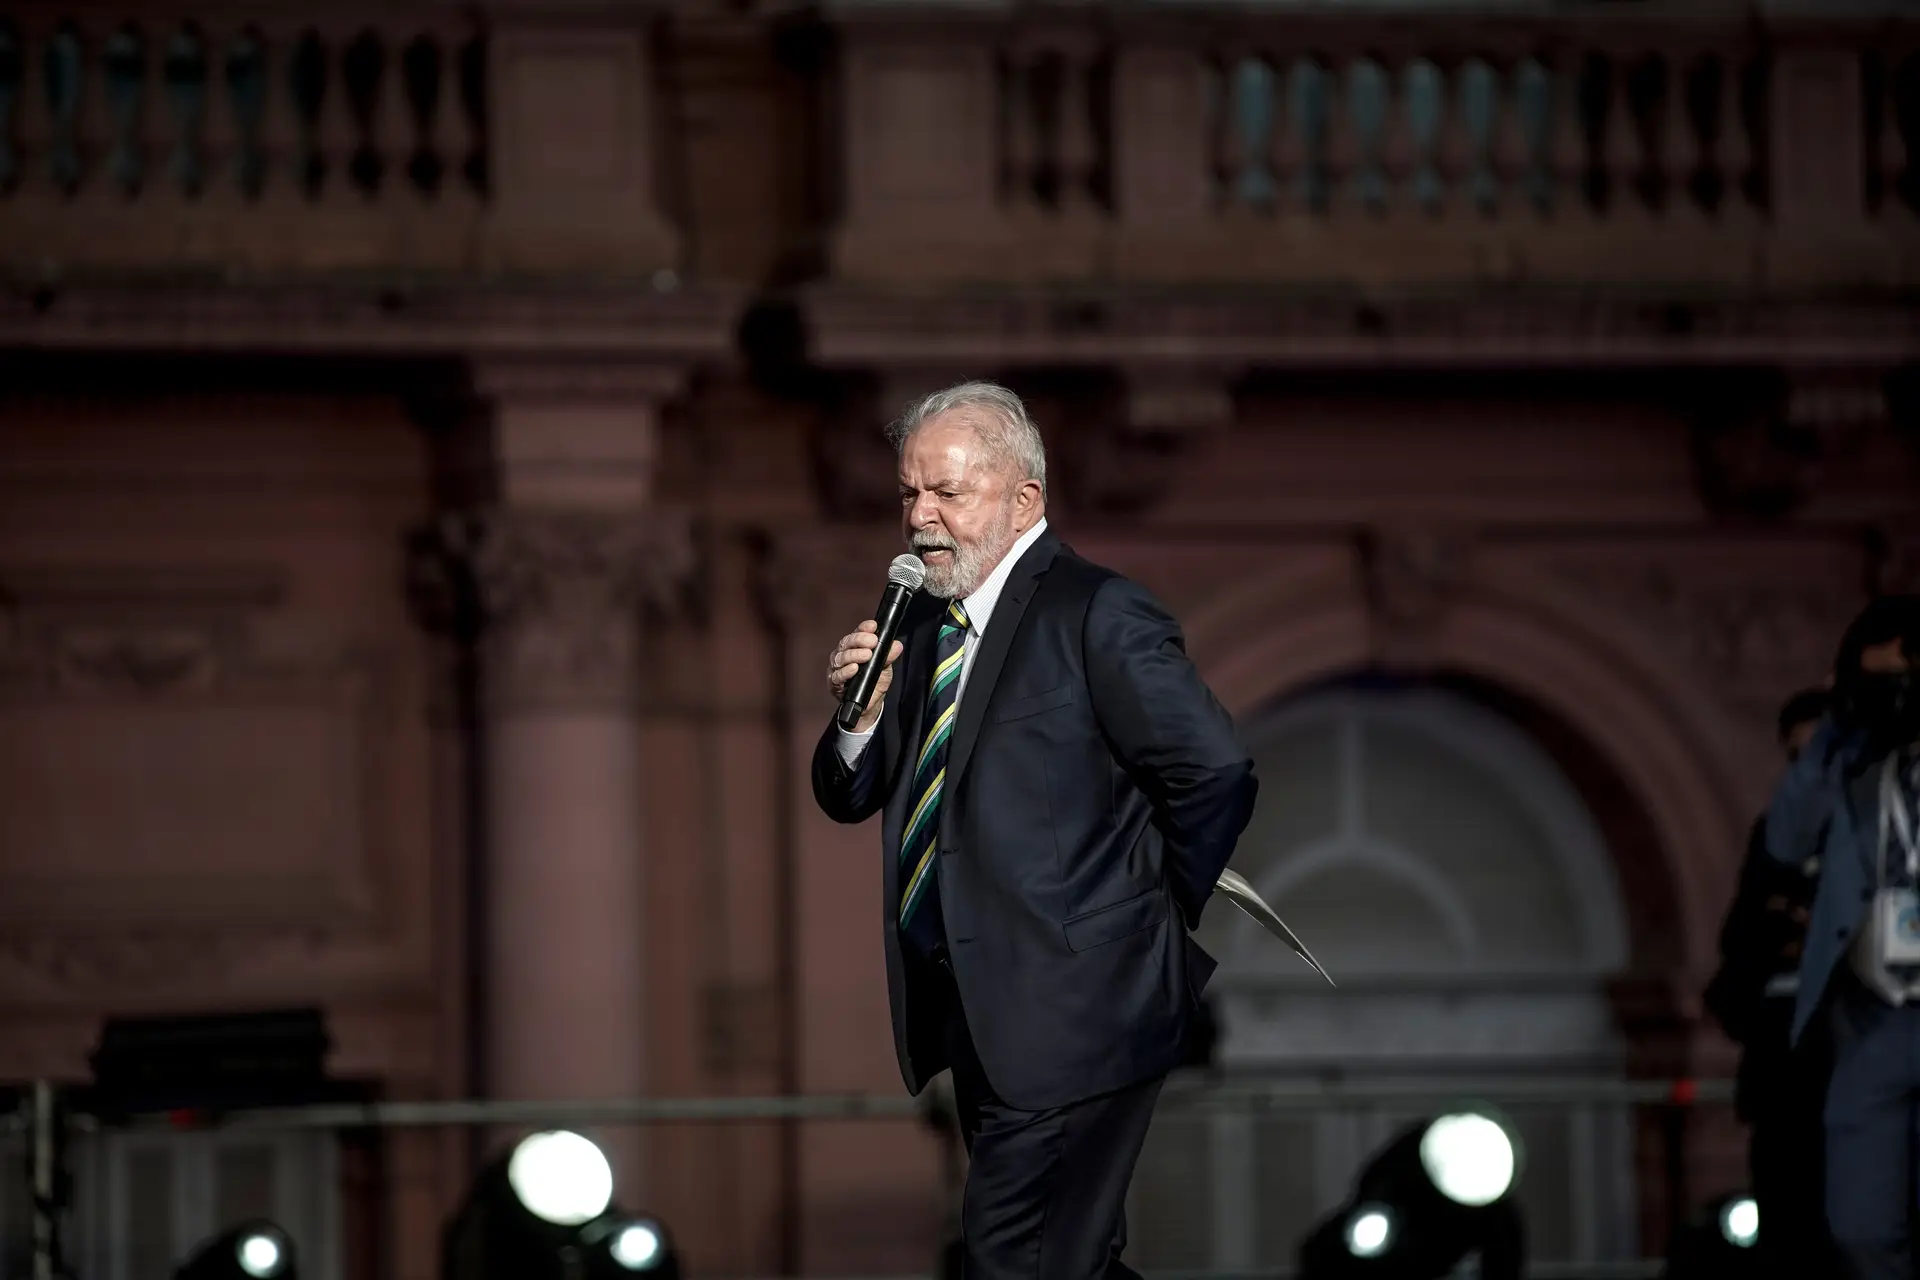 Tribunal nega pedido para retirar vídeo em que Lula chama Bolsonaro de "cobarde"